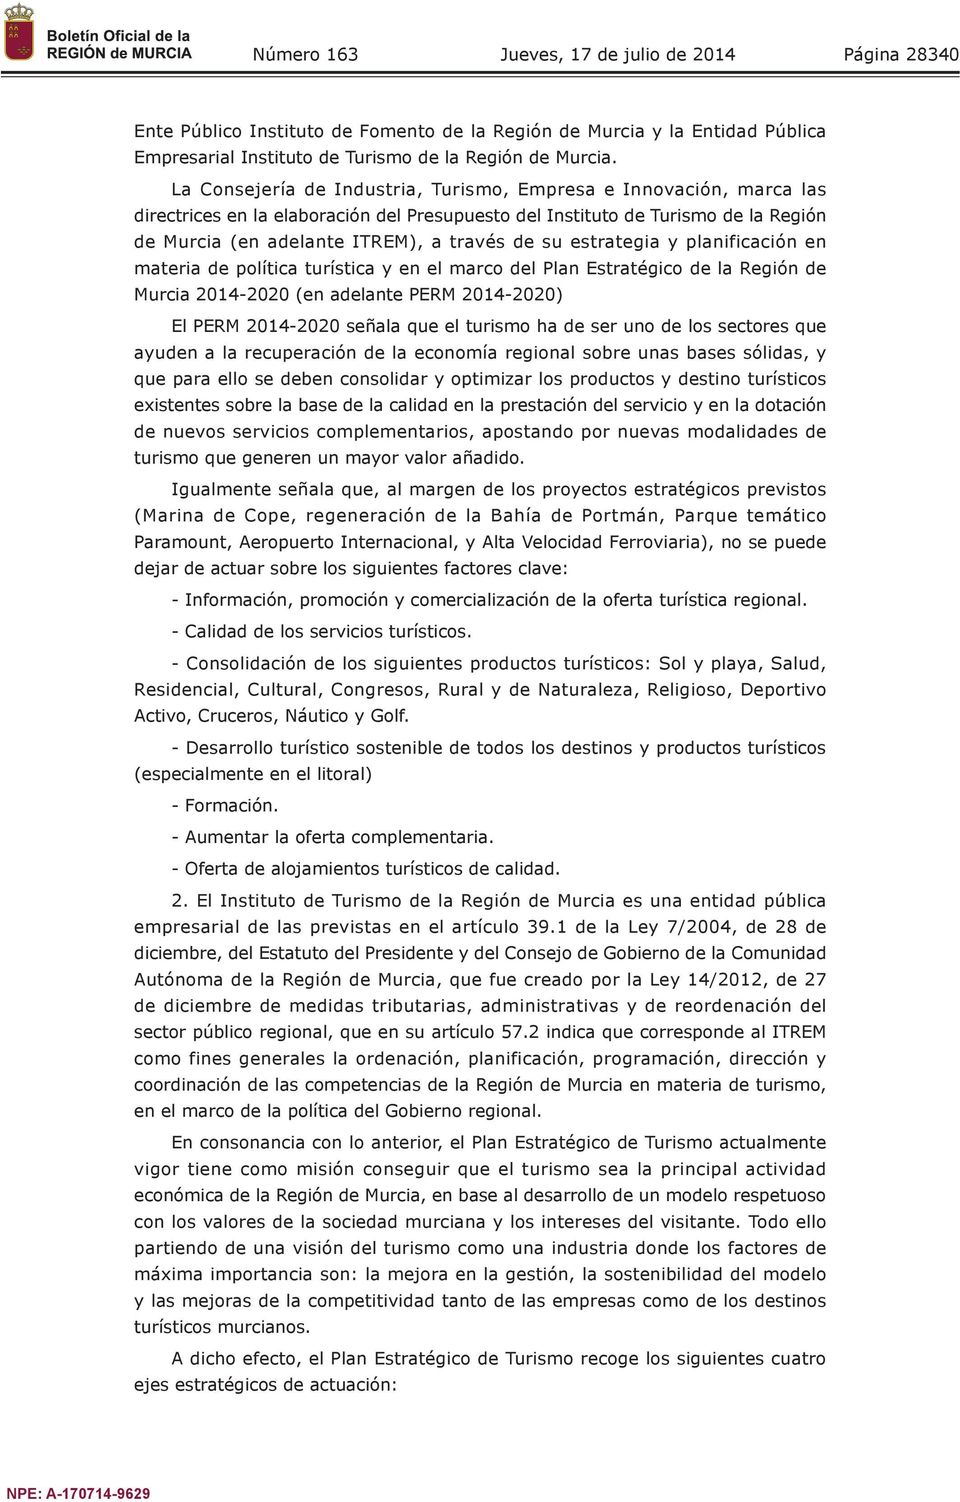 estrategia y planificación en materia de política turística y en el marco del Plan Estratégico de la Región de Murcia 2014-2020 (en adelante PERM 2014-2020) El PERM 2014-2020 señala que el turismo ha